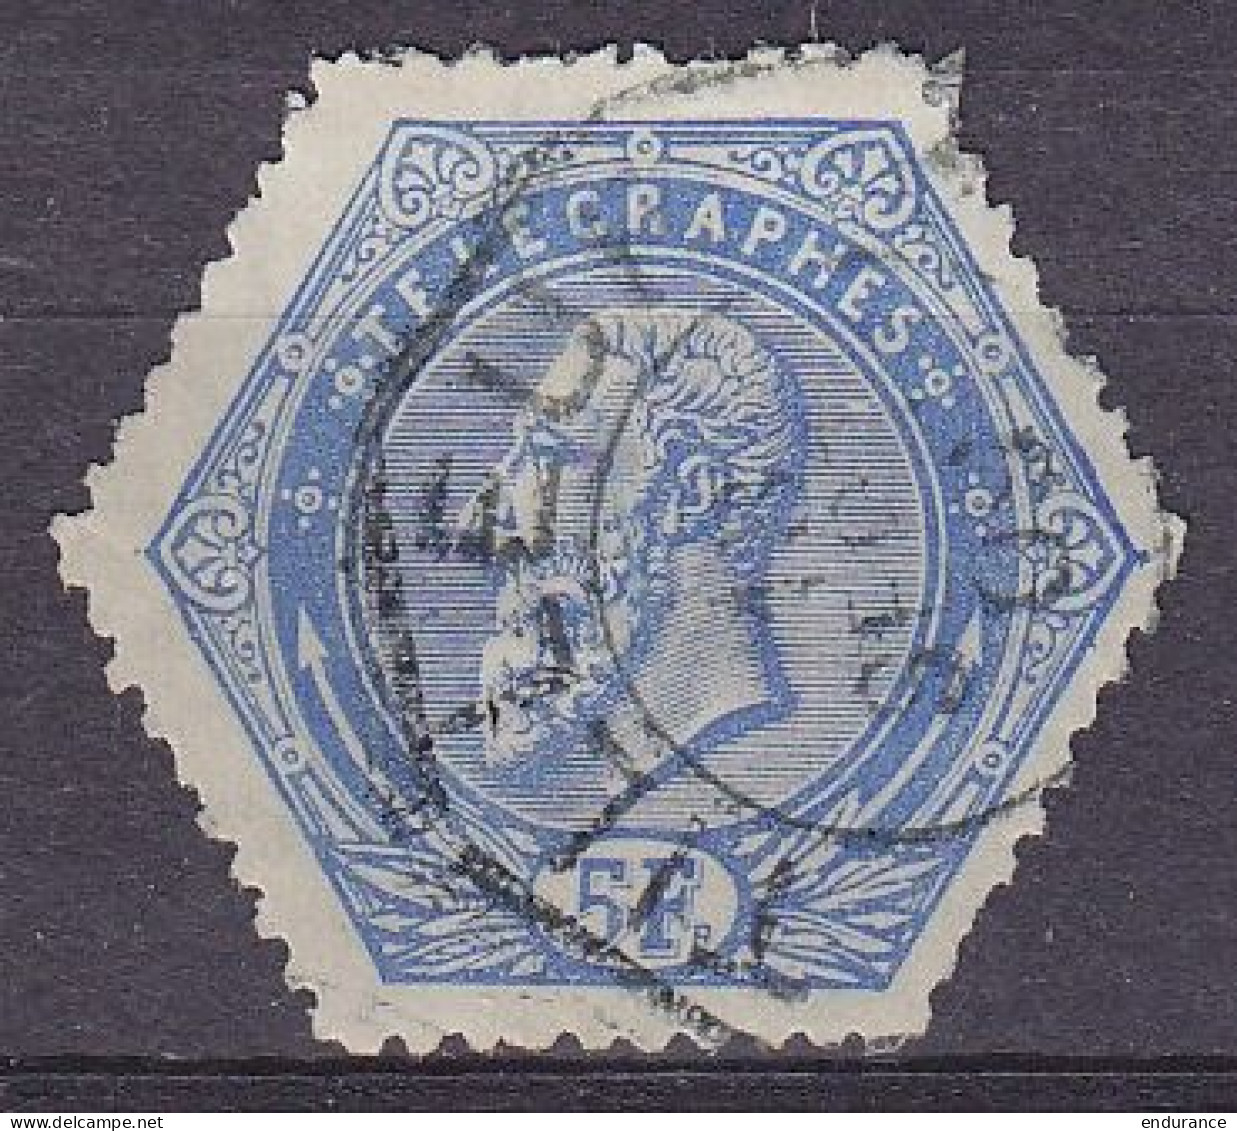 Belgique - Télégraphe TG17 (1899) 5f Bleu - Superbe Oblit. TILLEUR /18 SEPT 190? - Timbres Télégraphes [TG]